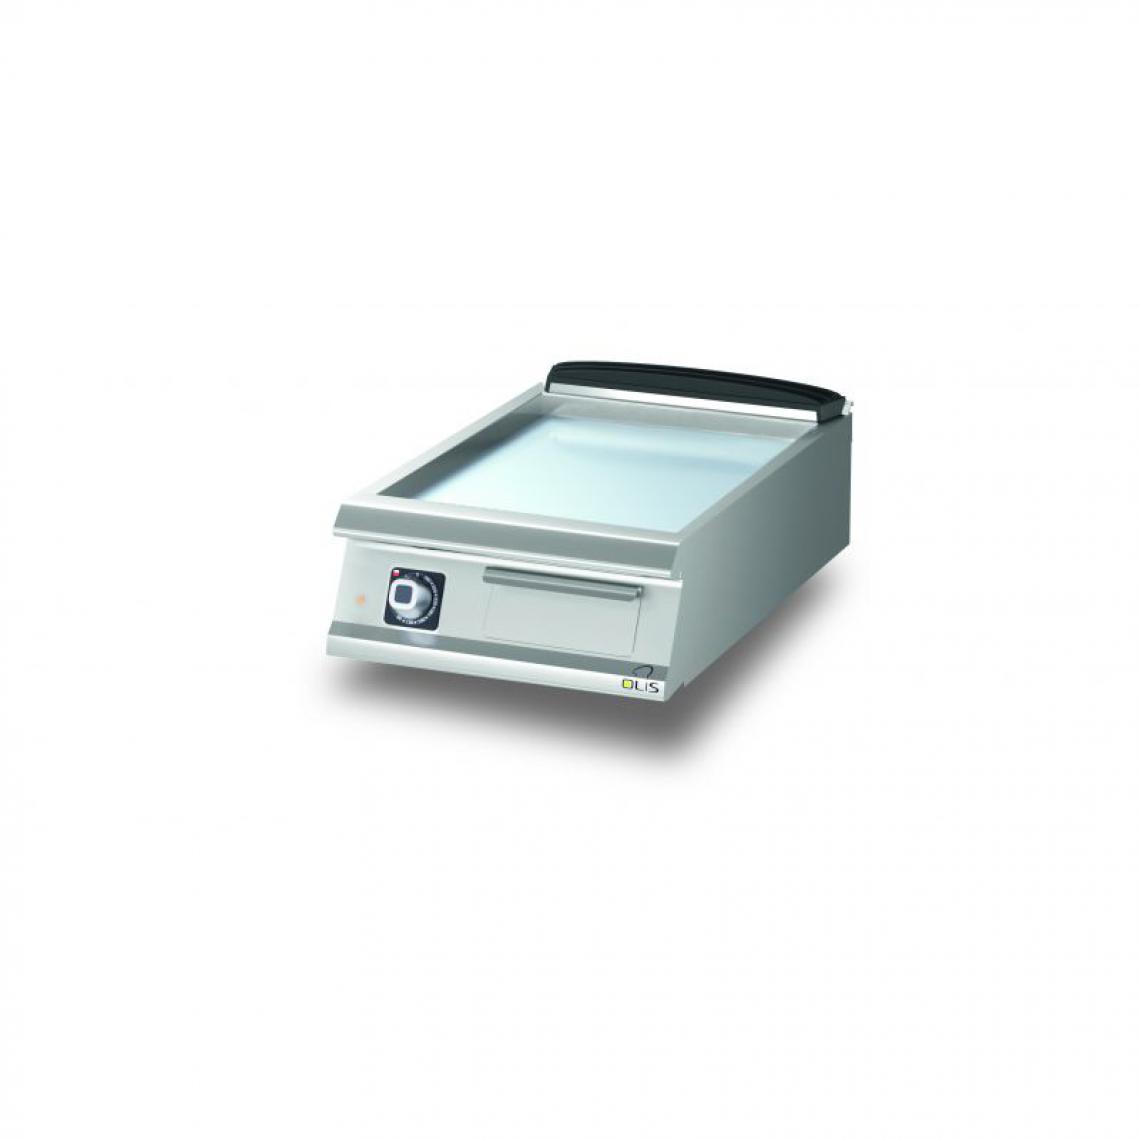 Materiel Chr Pro - Plancha Electrique Lisse Chromée Diamante 90 - 400 à 1200 mm - Olis - Chromé600 mm - Accessoires barbecue